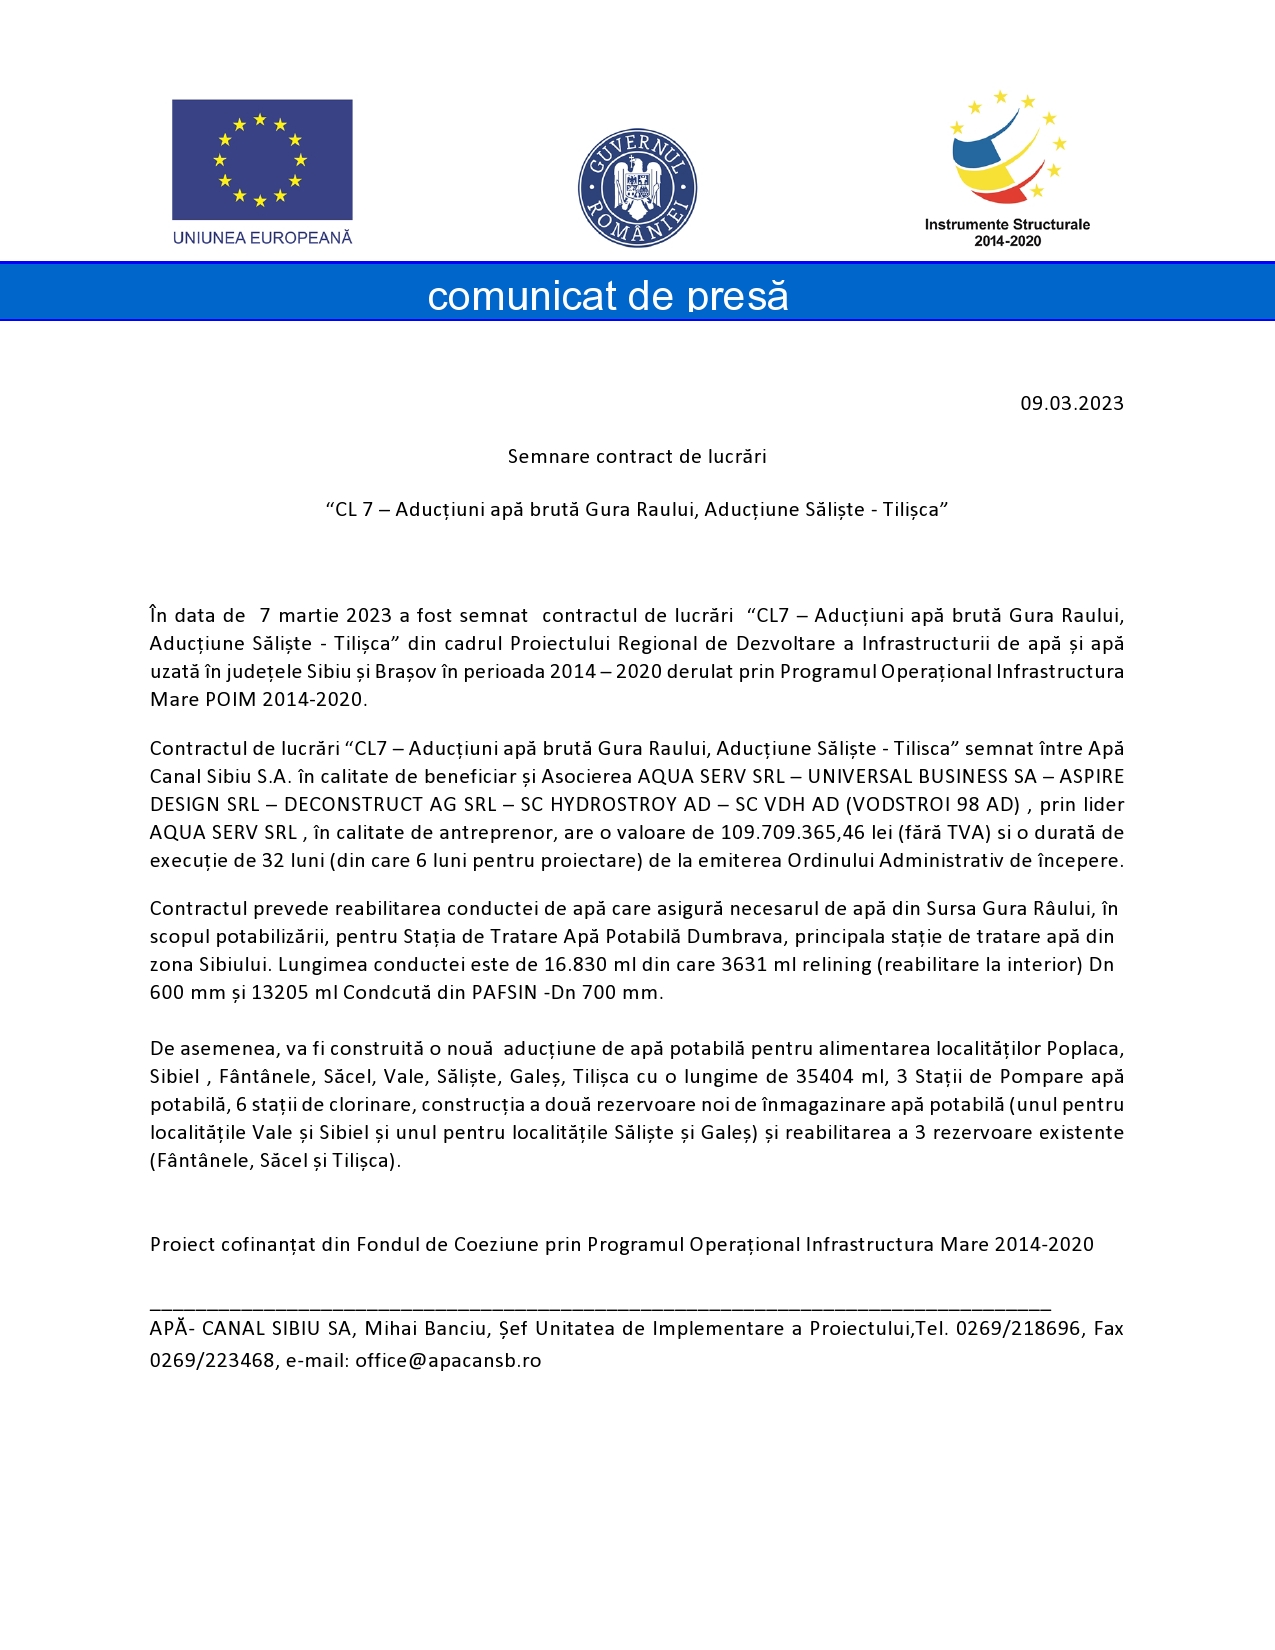 Comunicat de presă - Semnare contract de lucrări  “CL 7 – Aducțiuni apă brută Gura Raului, Aducțiune Săliște - Tilișca”